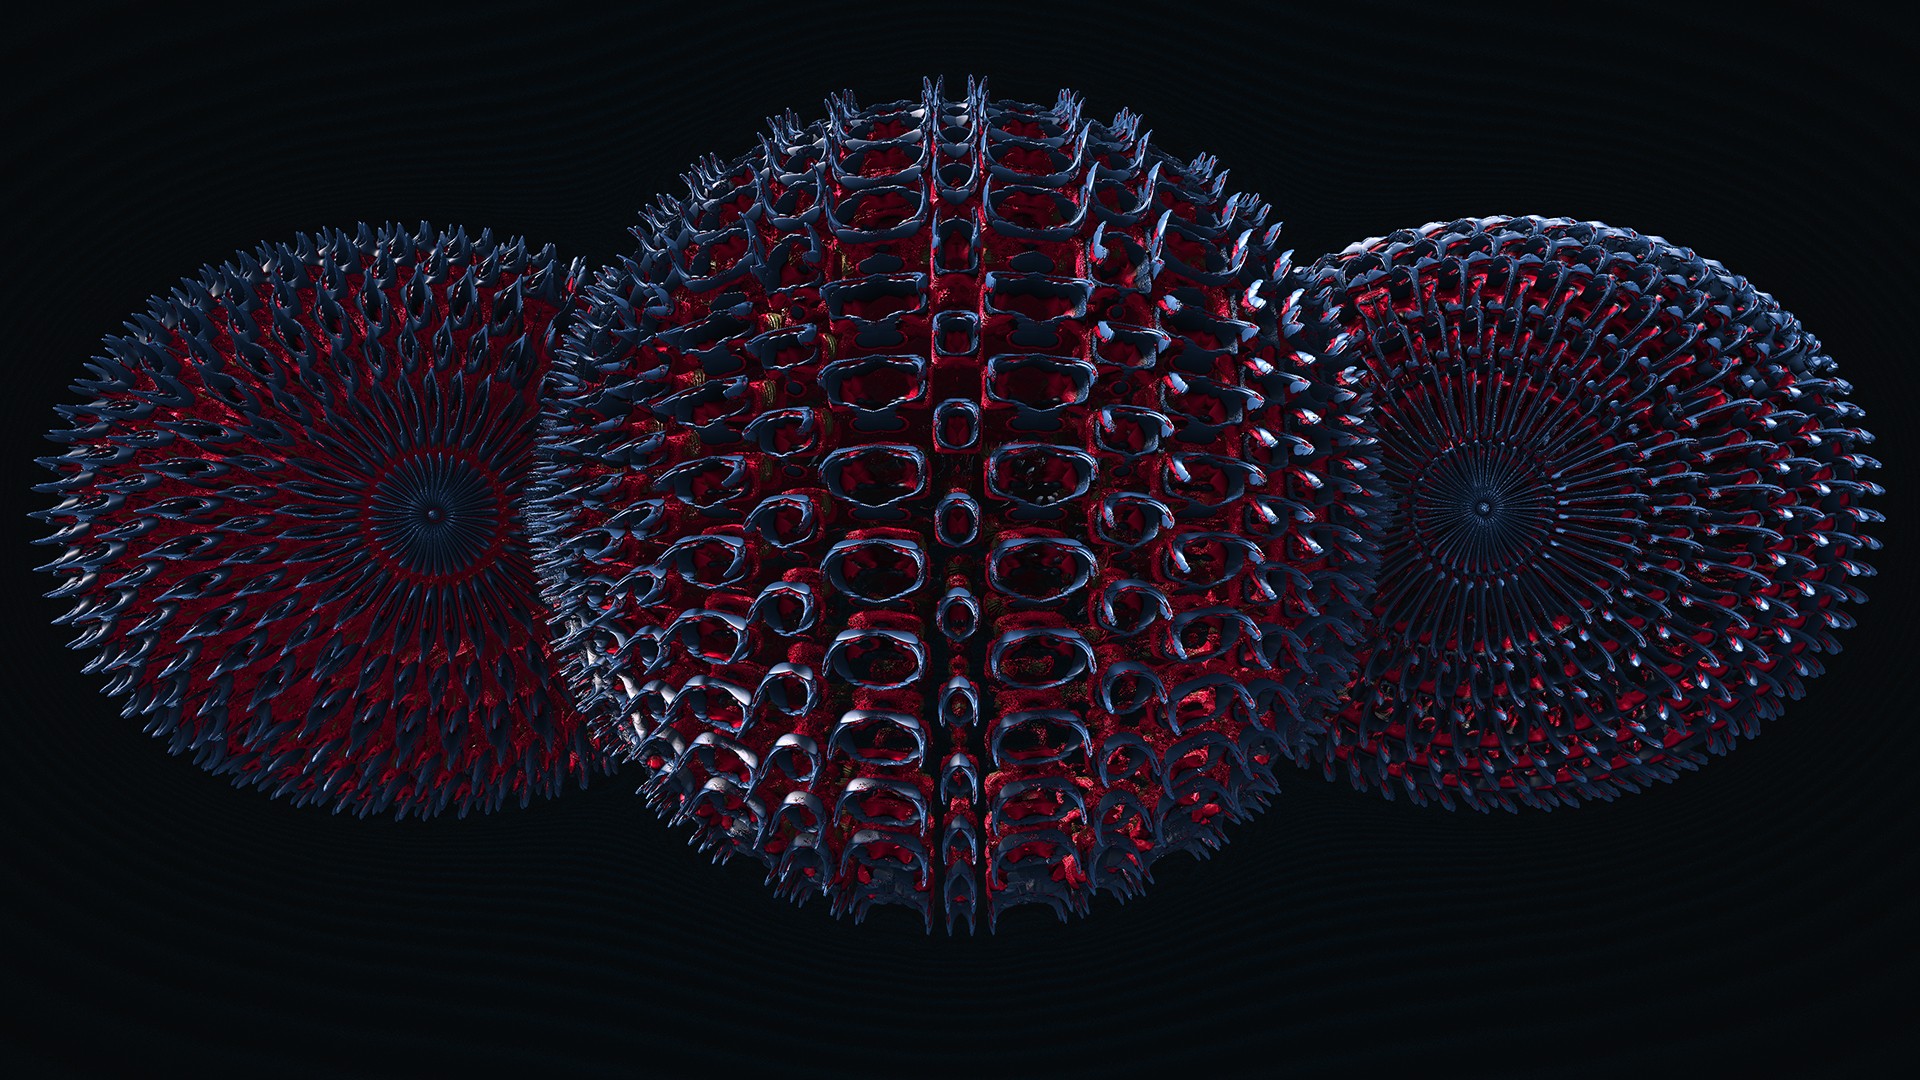 3D fractal, Render, Digital art, Abstract Wallpaper